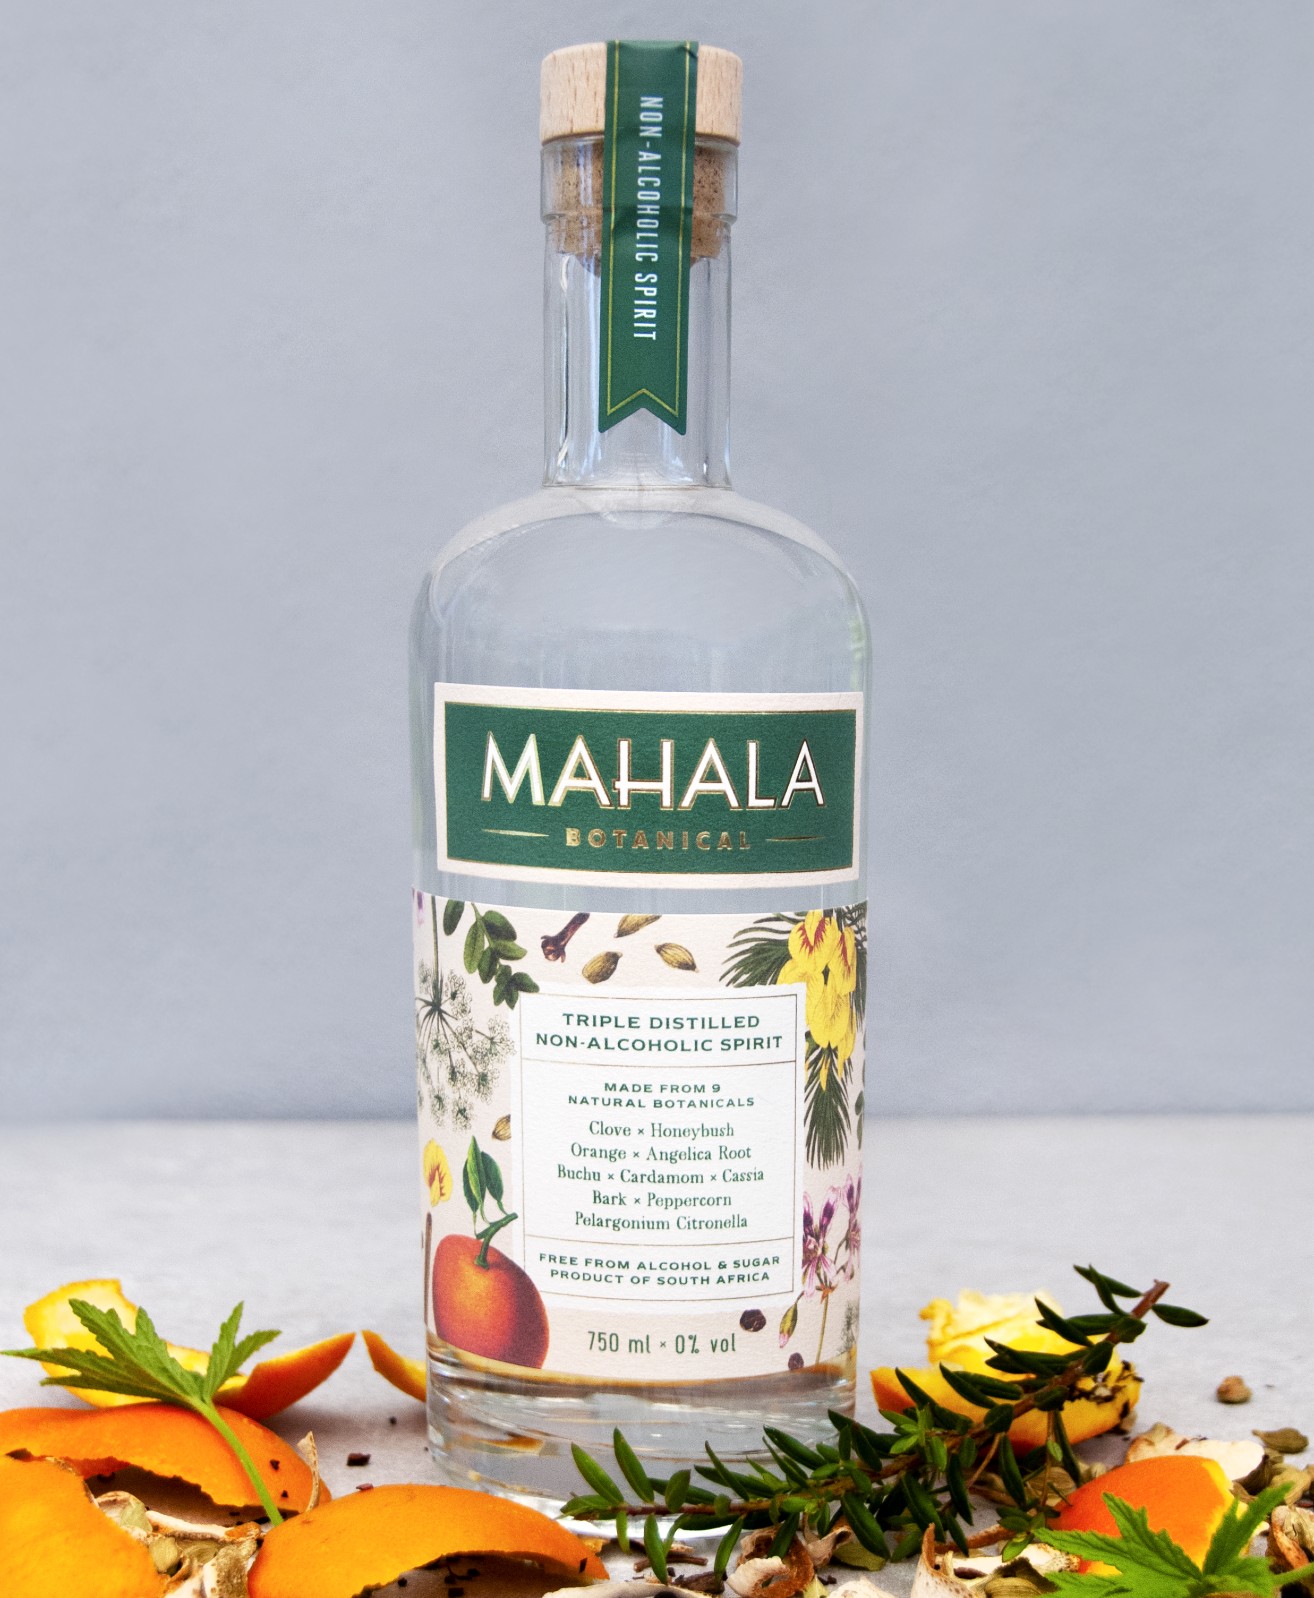 Mahala Botanical spirits [Courtesy Mahala Botanical]